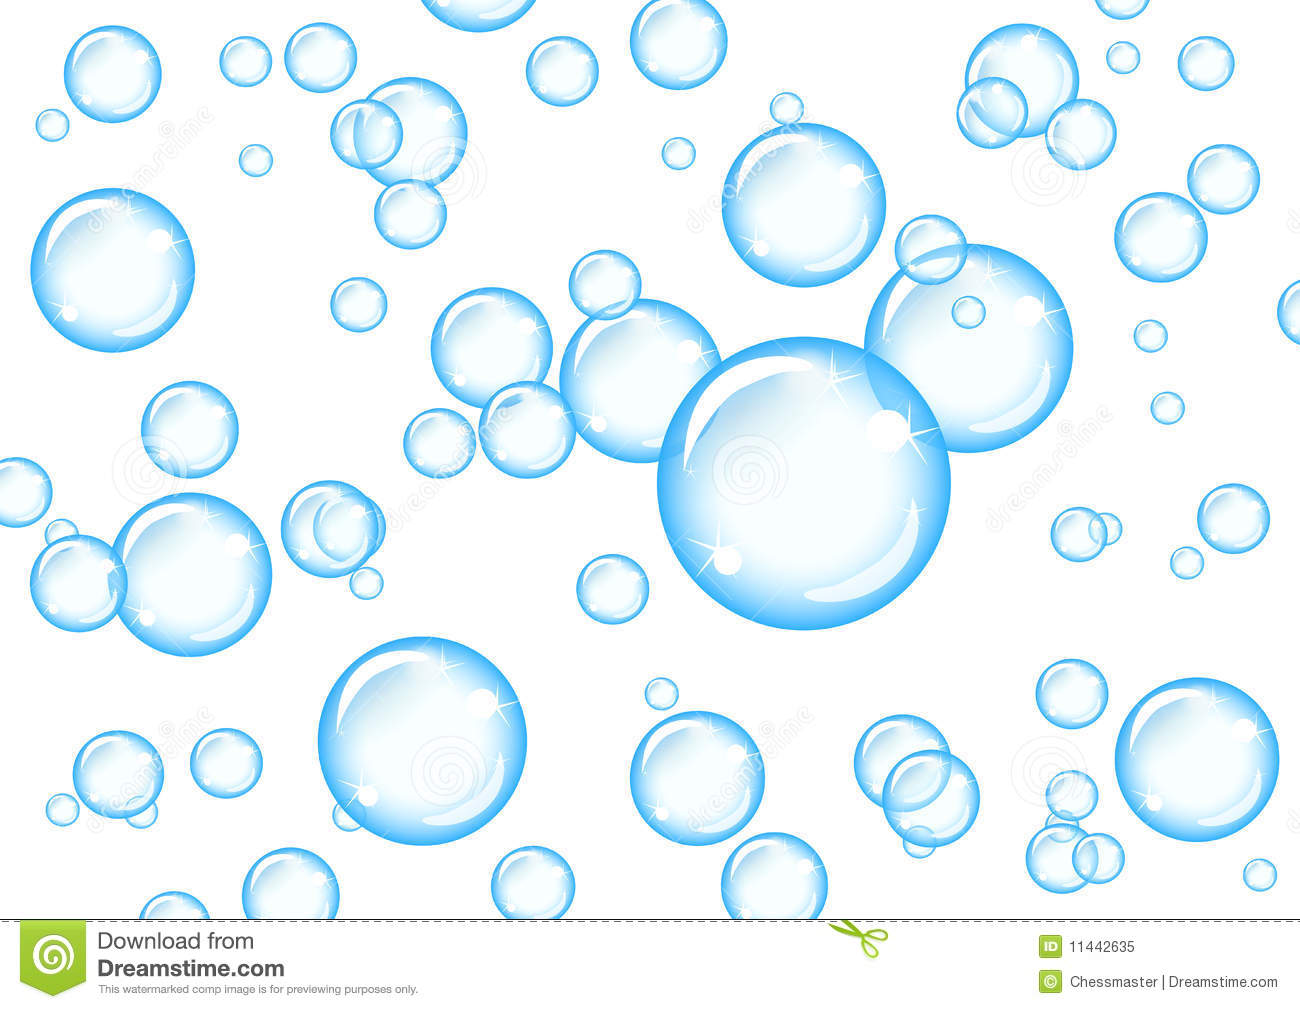 Air bubbles clipart.